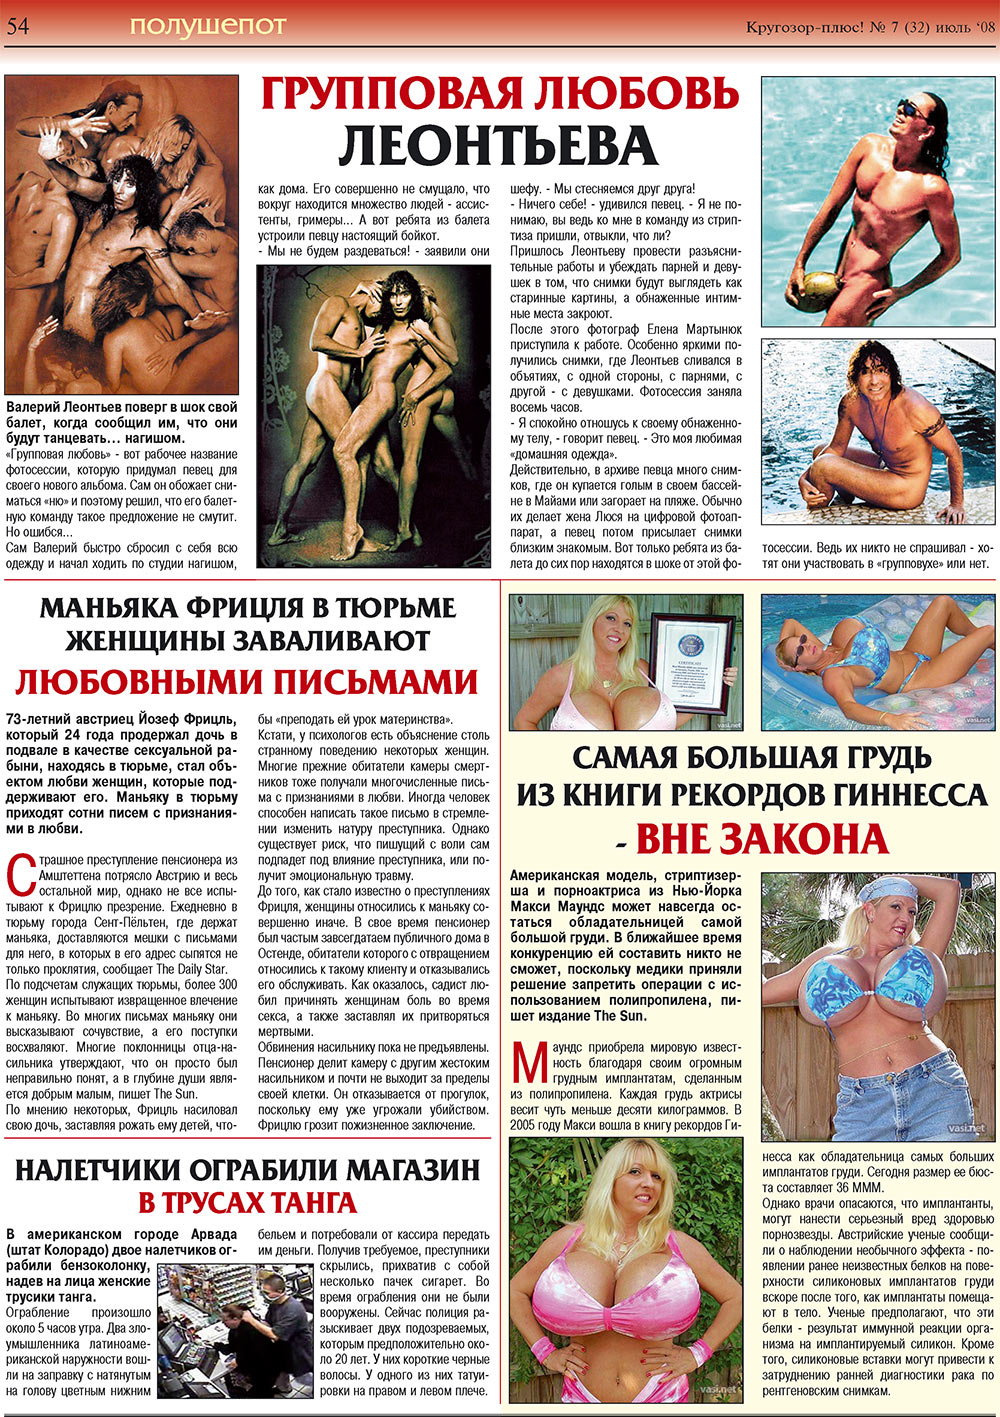 Кругозор плюс!, газета. 2008 №7 стр.54